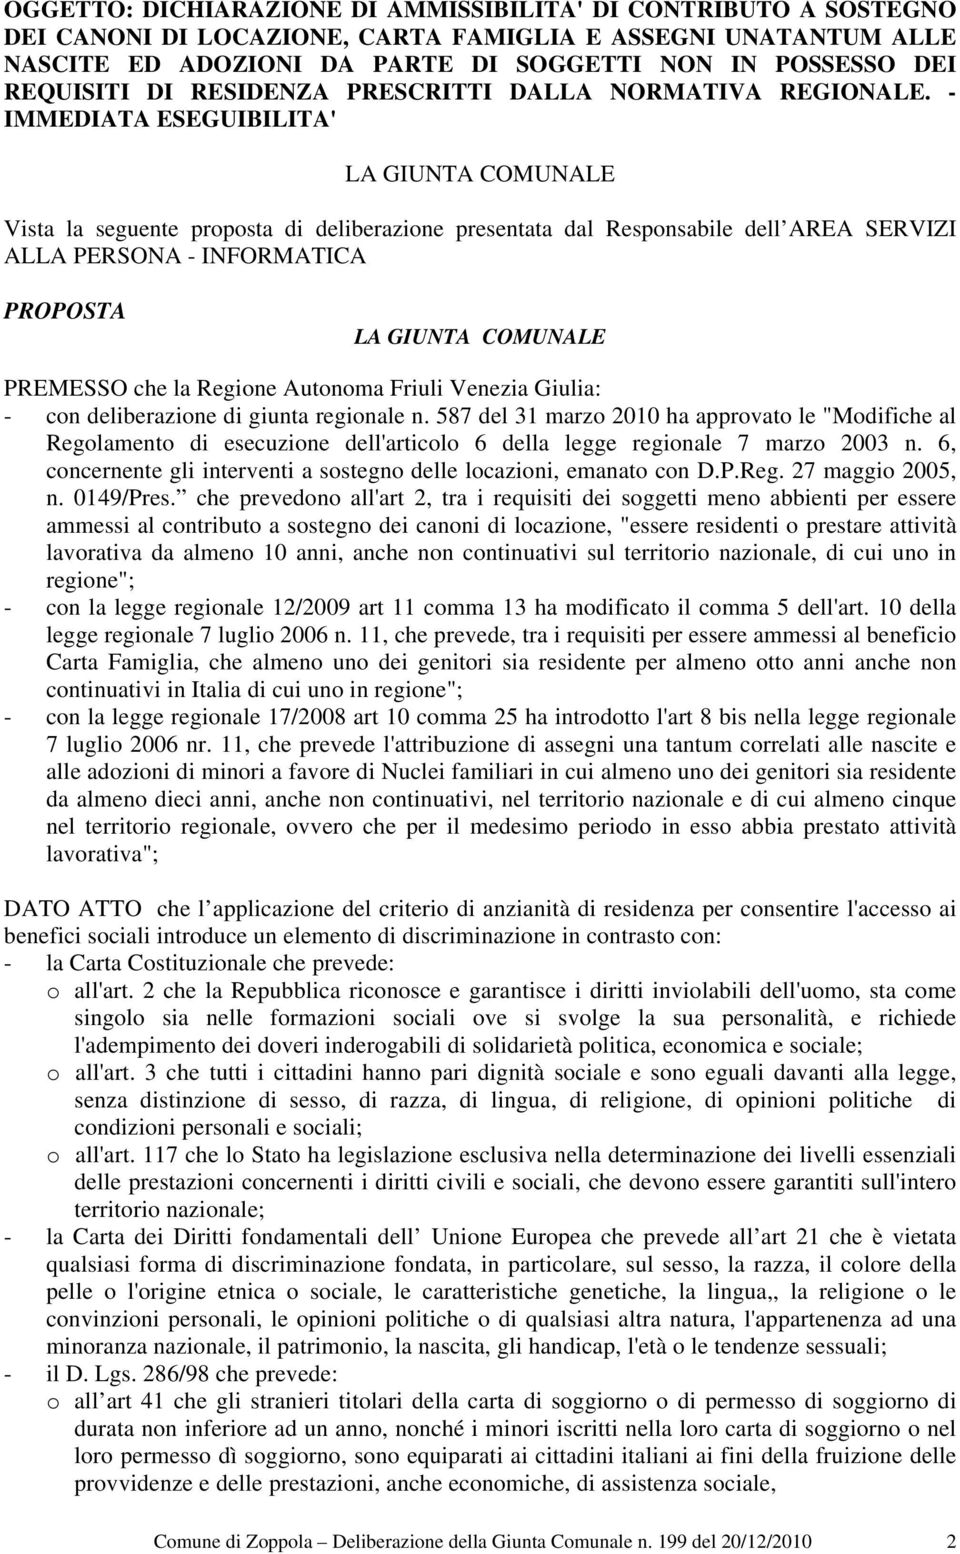 - IMMEDIATA ESEGUIBILITA' Vista la seguente proposta di deliberazione presentata dal Responsabile dell AREA SERVIZI ALLA PERSONA - INFORMATICA PROPOSTA PREMESSO che la Regione Autonoma Friuli Venezia